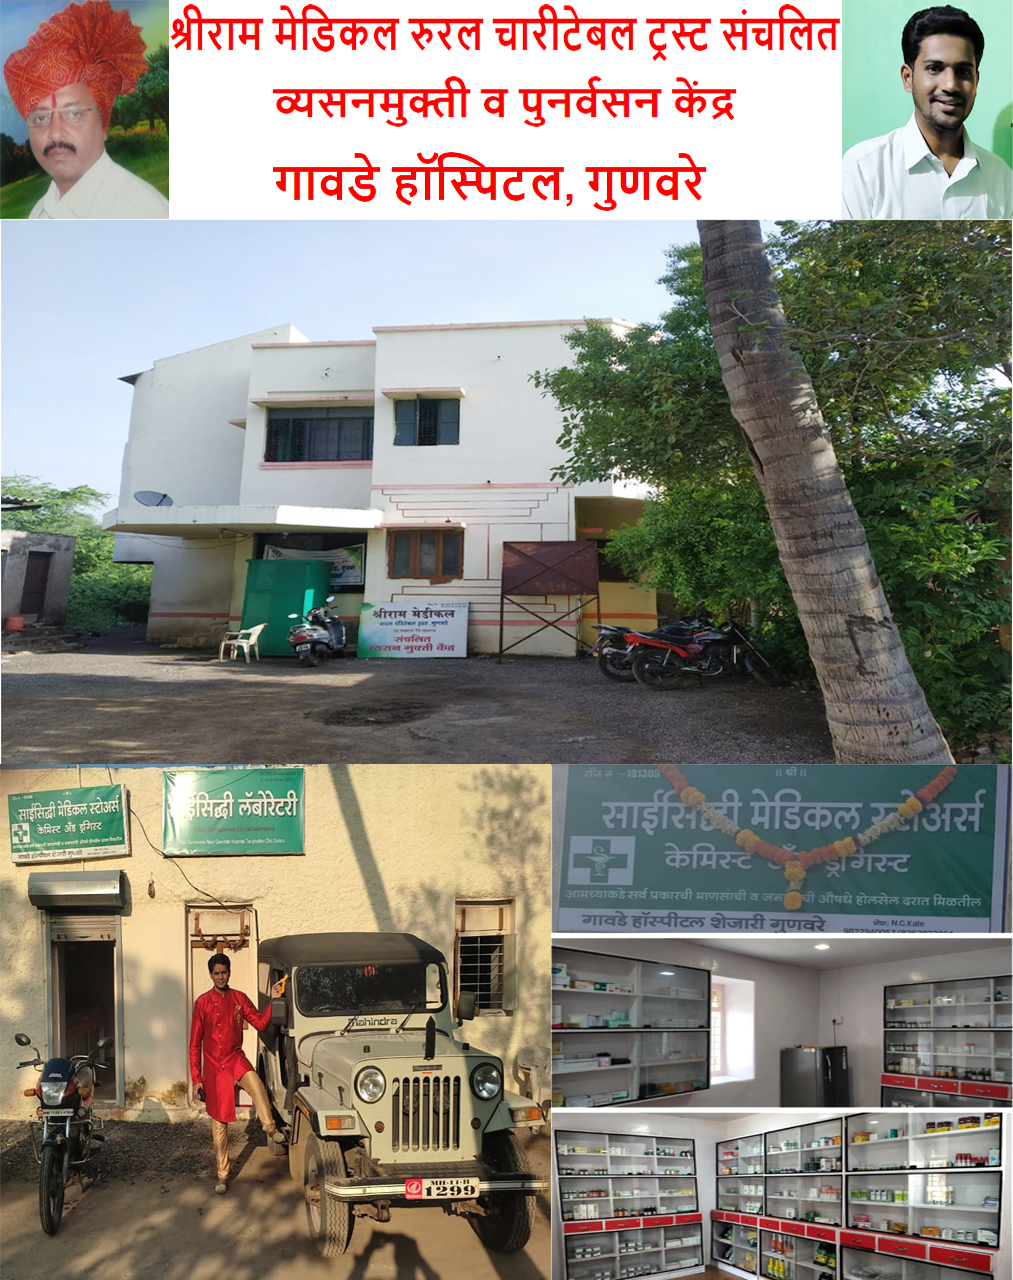 श्रीराम मेडिकल रुरल चारीटेबल ट्रस्ट संचलित व्यसनमुक्ती  व पुनर्वसन केंद्र & गावडे हॉस्पिटल, गुणवरे | SolapurMall.com